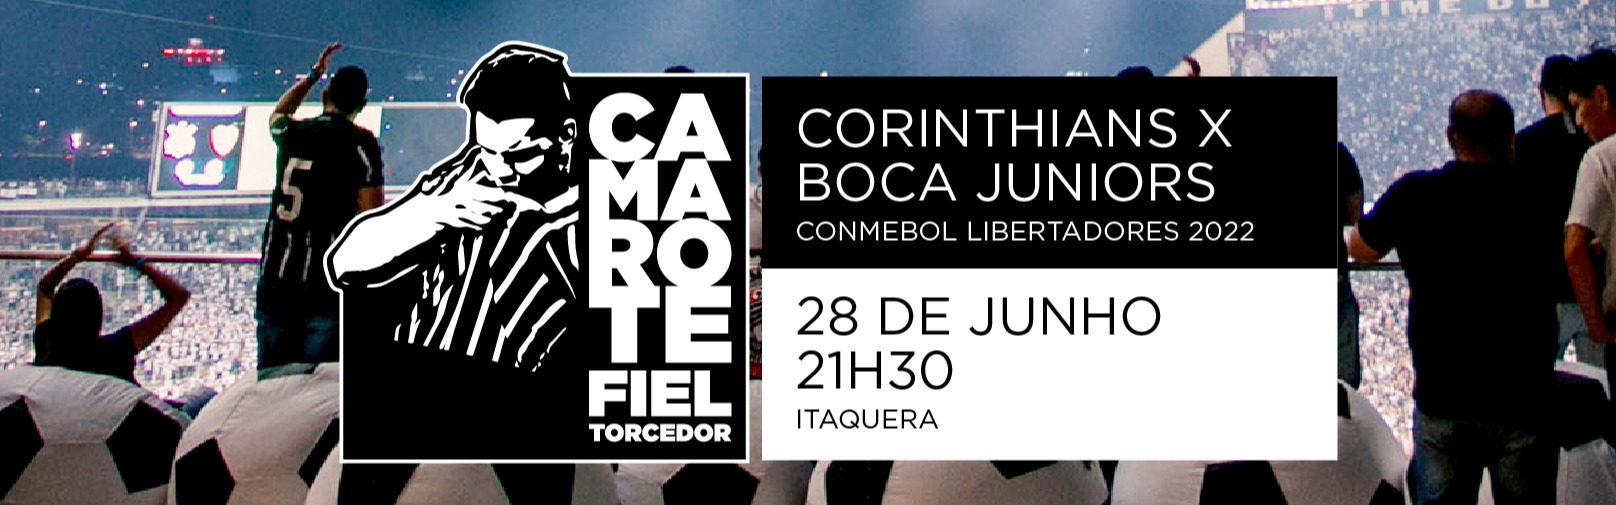 Camarote Fiel Torcedor: saiba como será o funcionamento no jogo Corinthians x Boca Juniors